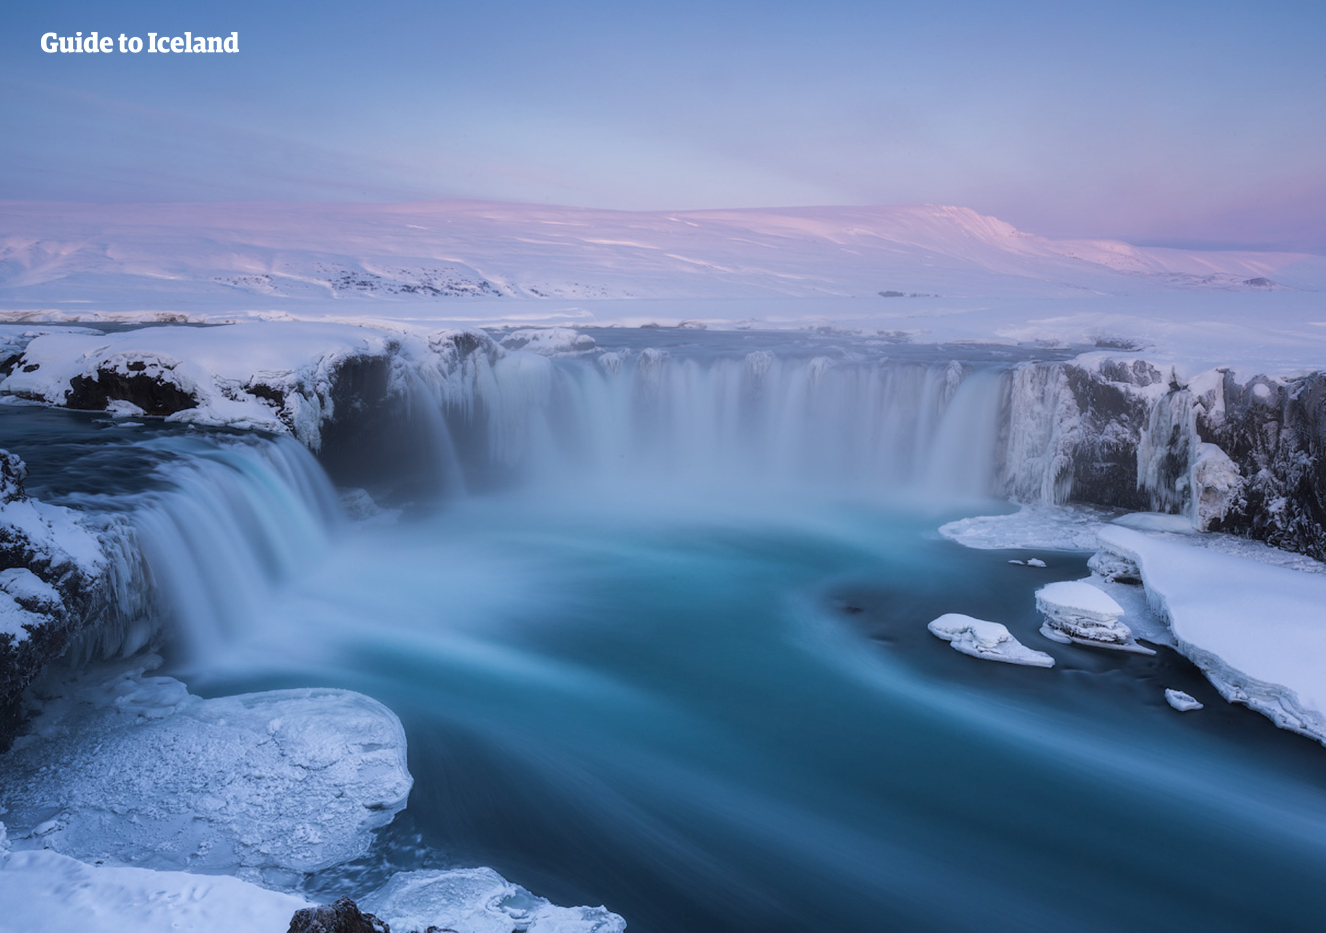 W różowym świetle niskiego zimowego słońca wodospad Goðafoss walczy z zamarzającymi żywiołami i nadal przepływa przez śnieżne krajobrazy północnej Islandii.